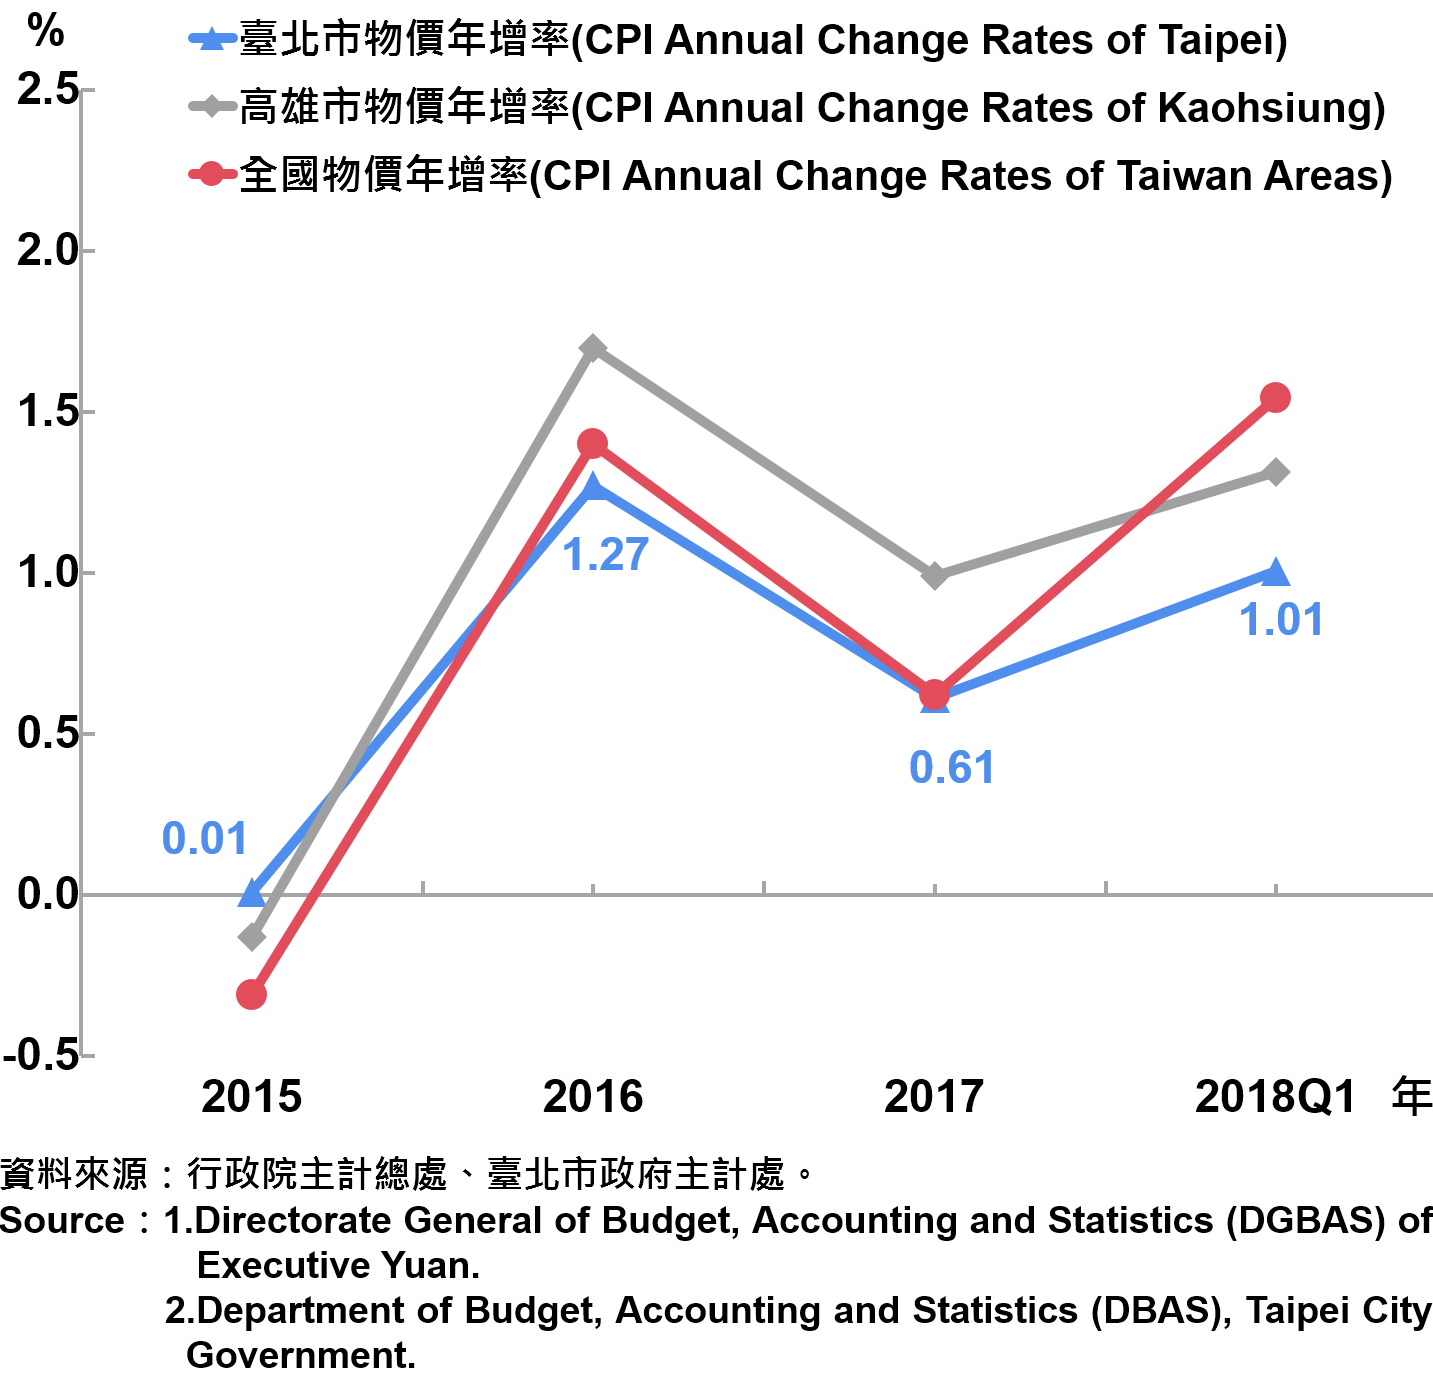 臺北市消費者物價指數（CPI）年增率—2018Q1 The Changes of CPI in Taipei City—2018Q1